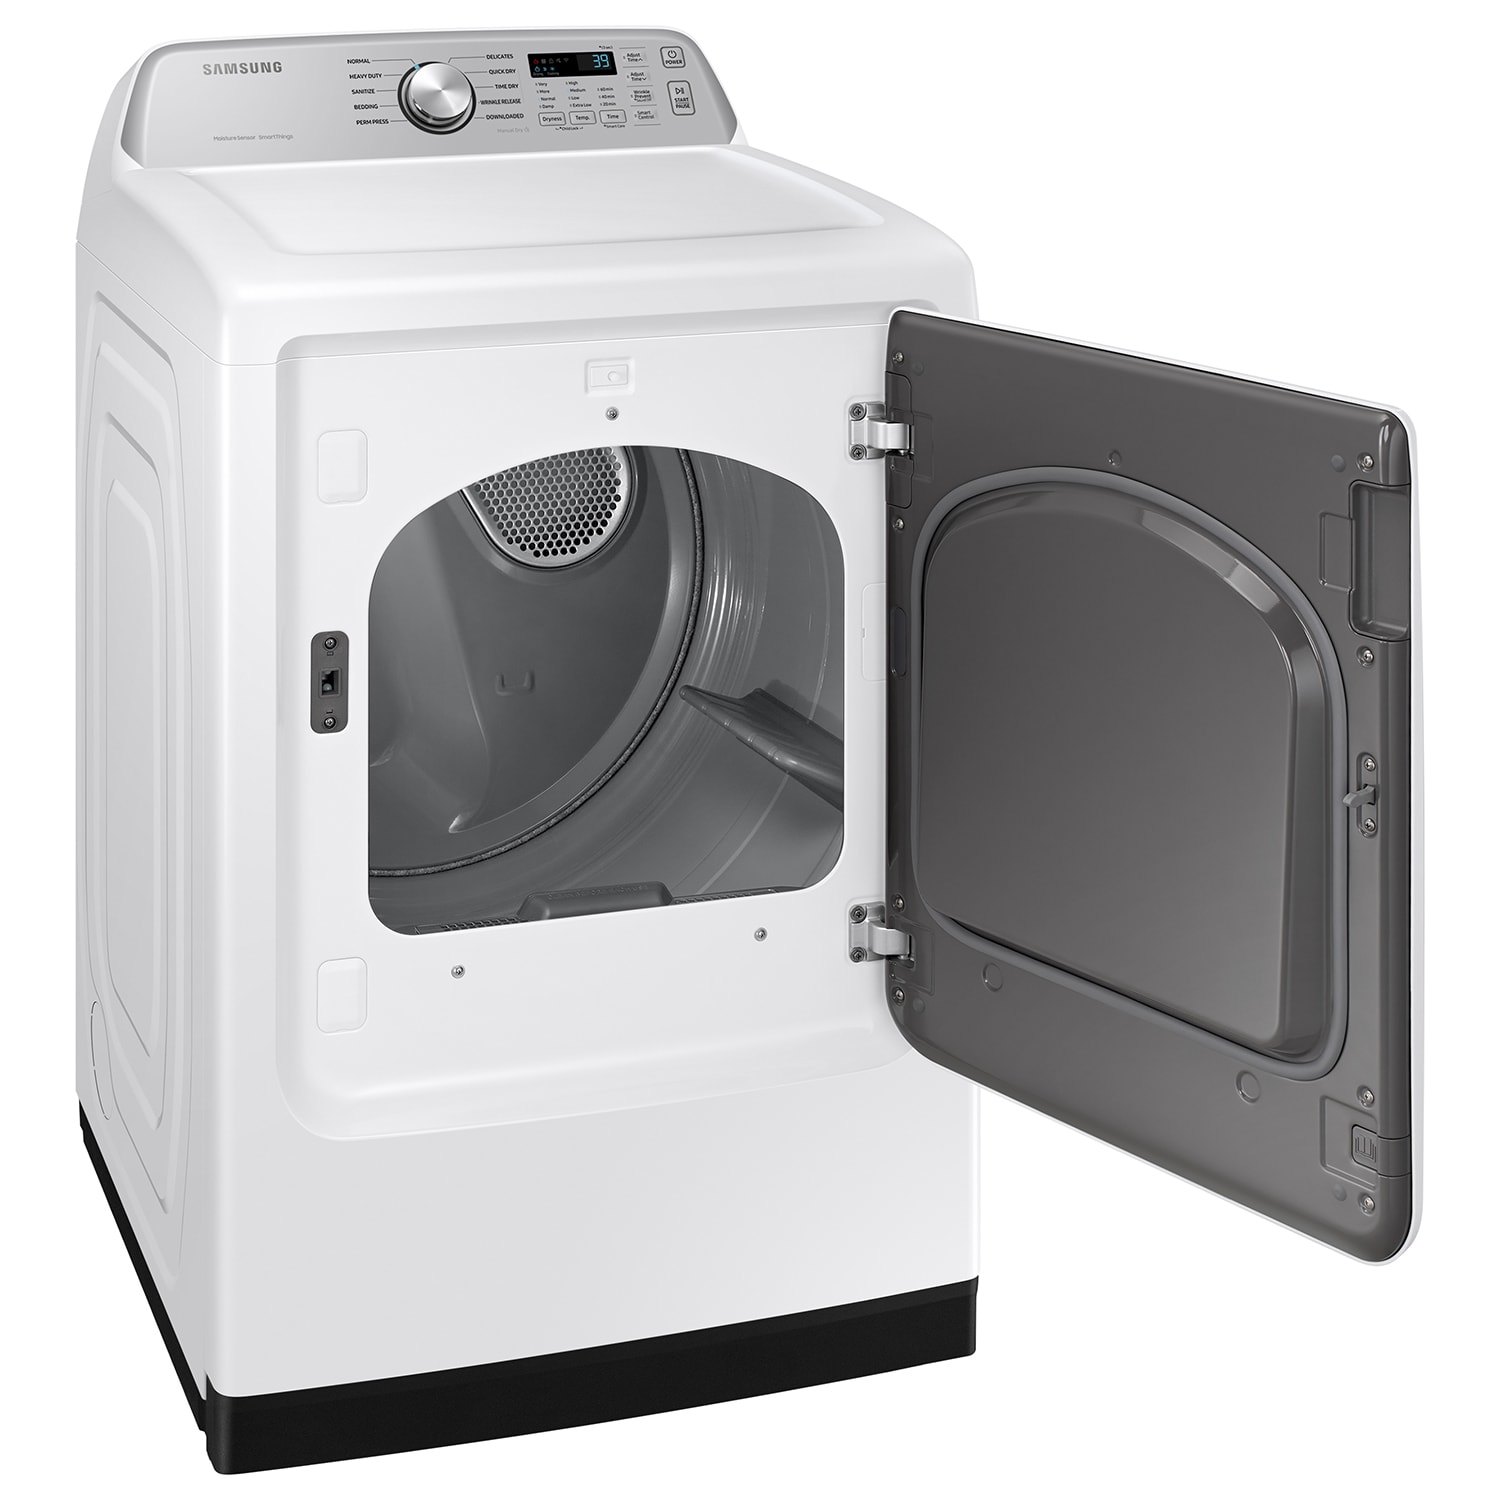 Maytag Laundry Wash Bag, Powerhouse Kitchens & Appliances